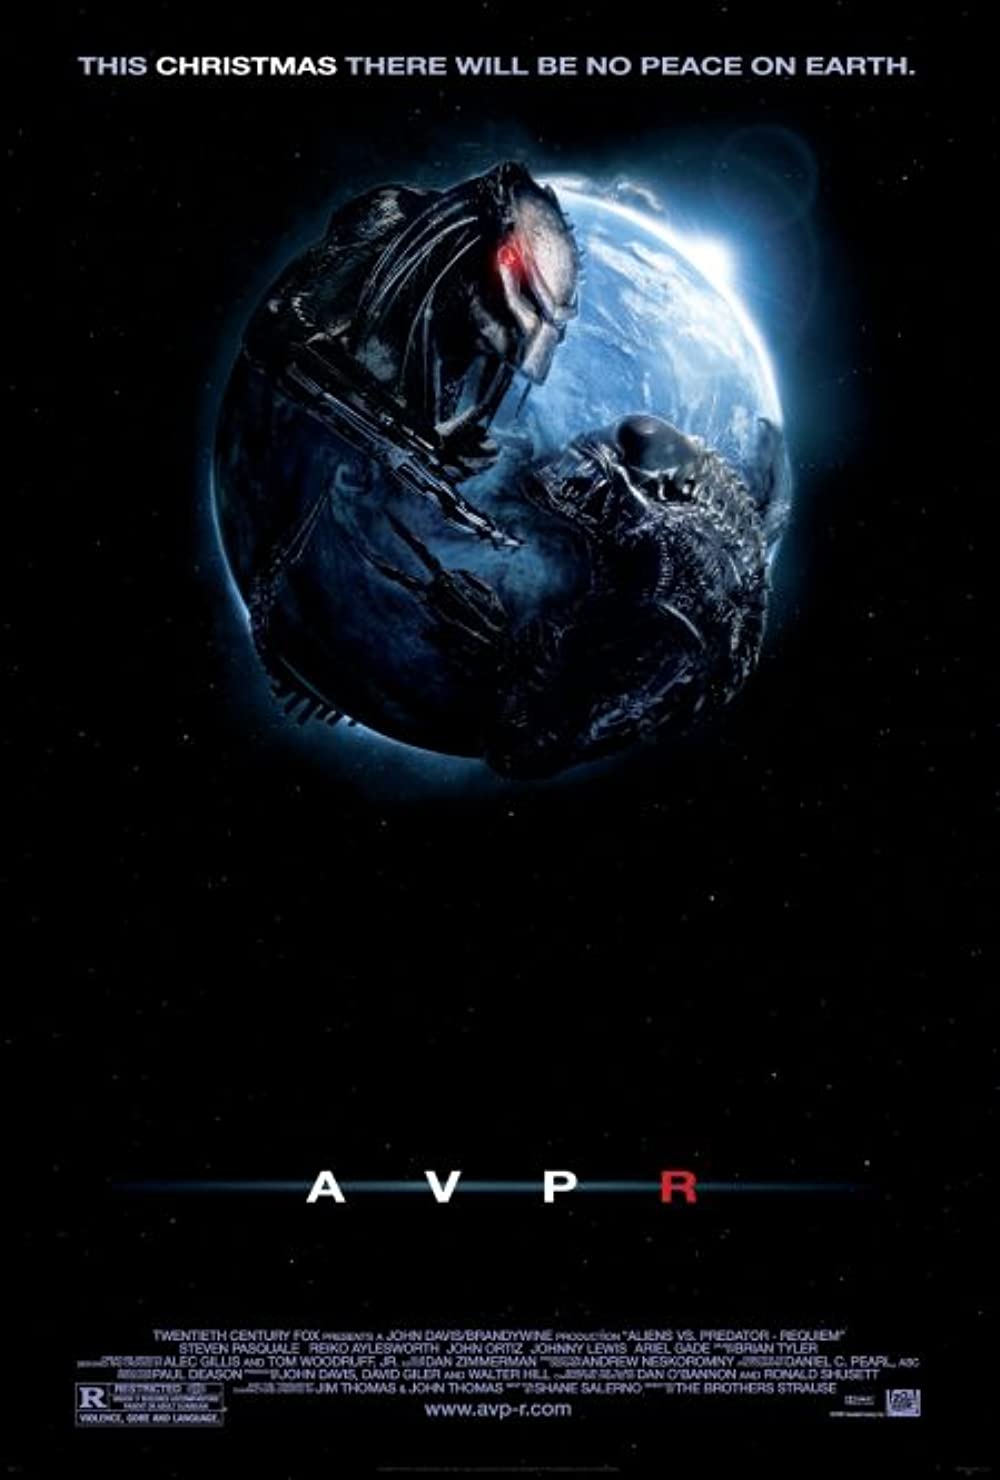 Filmbeschreibung zu AVPR: Aliens vs Predator - Requiem